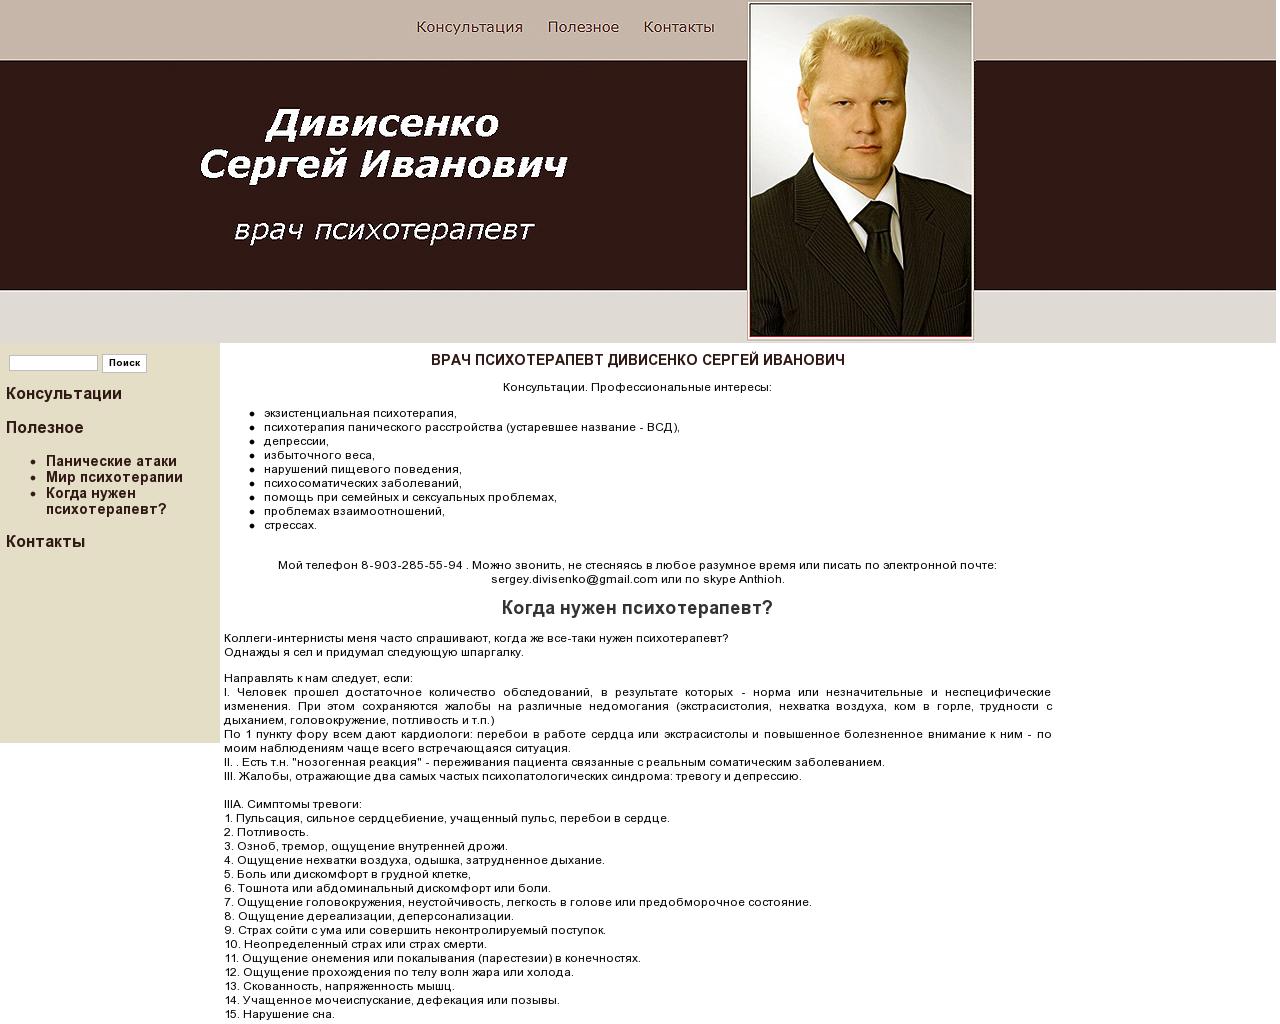 Изображение сайта divisenko.ru в разрешении 1280x1024